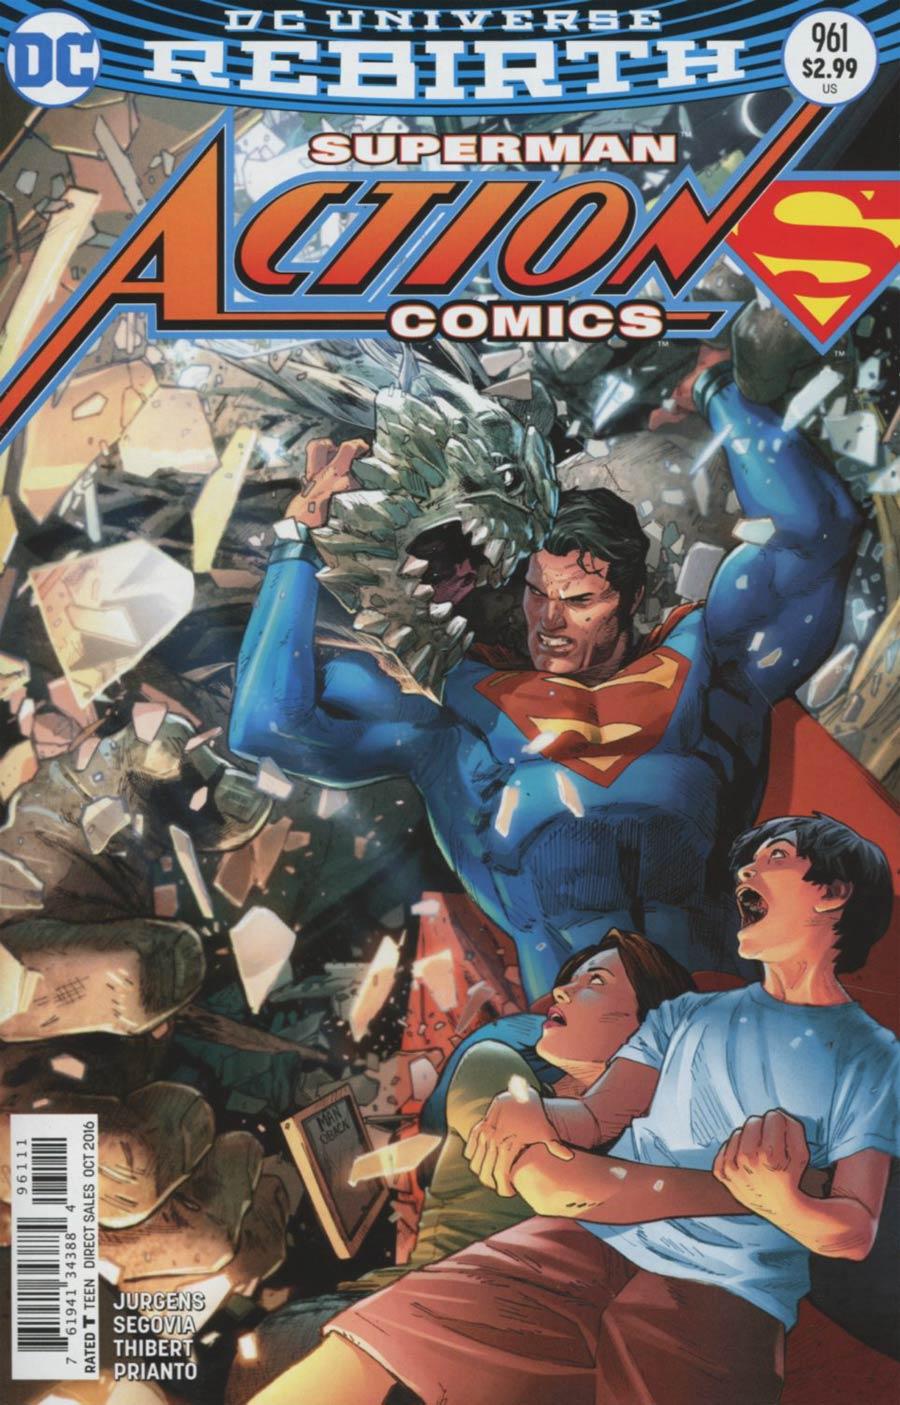 Action Comics Vol. 2 #961